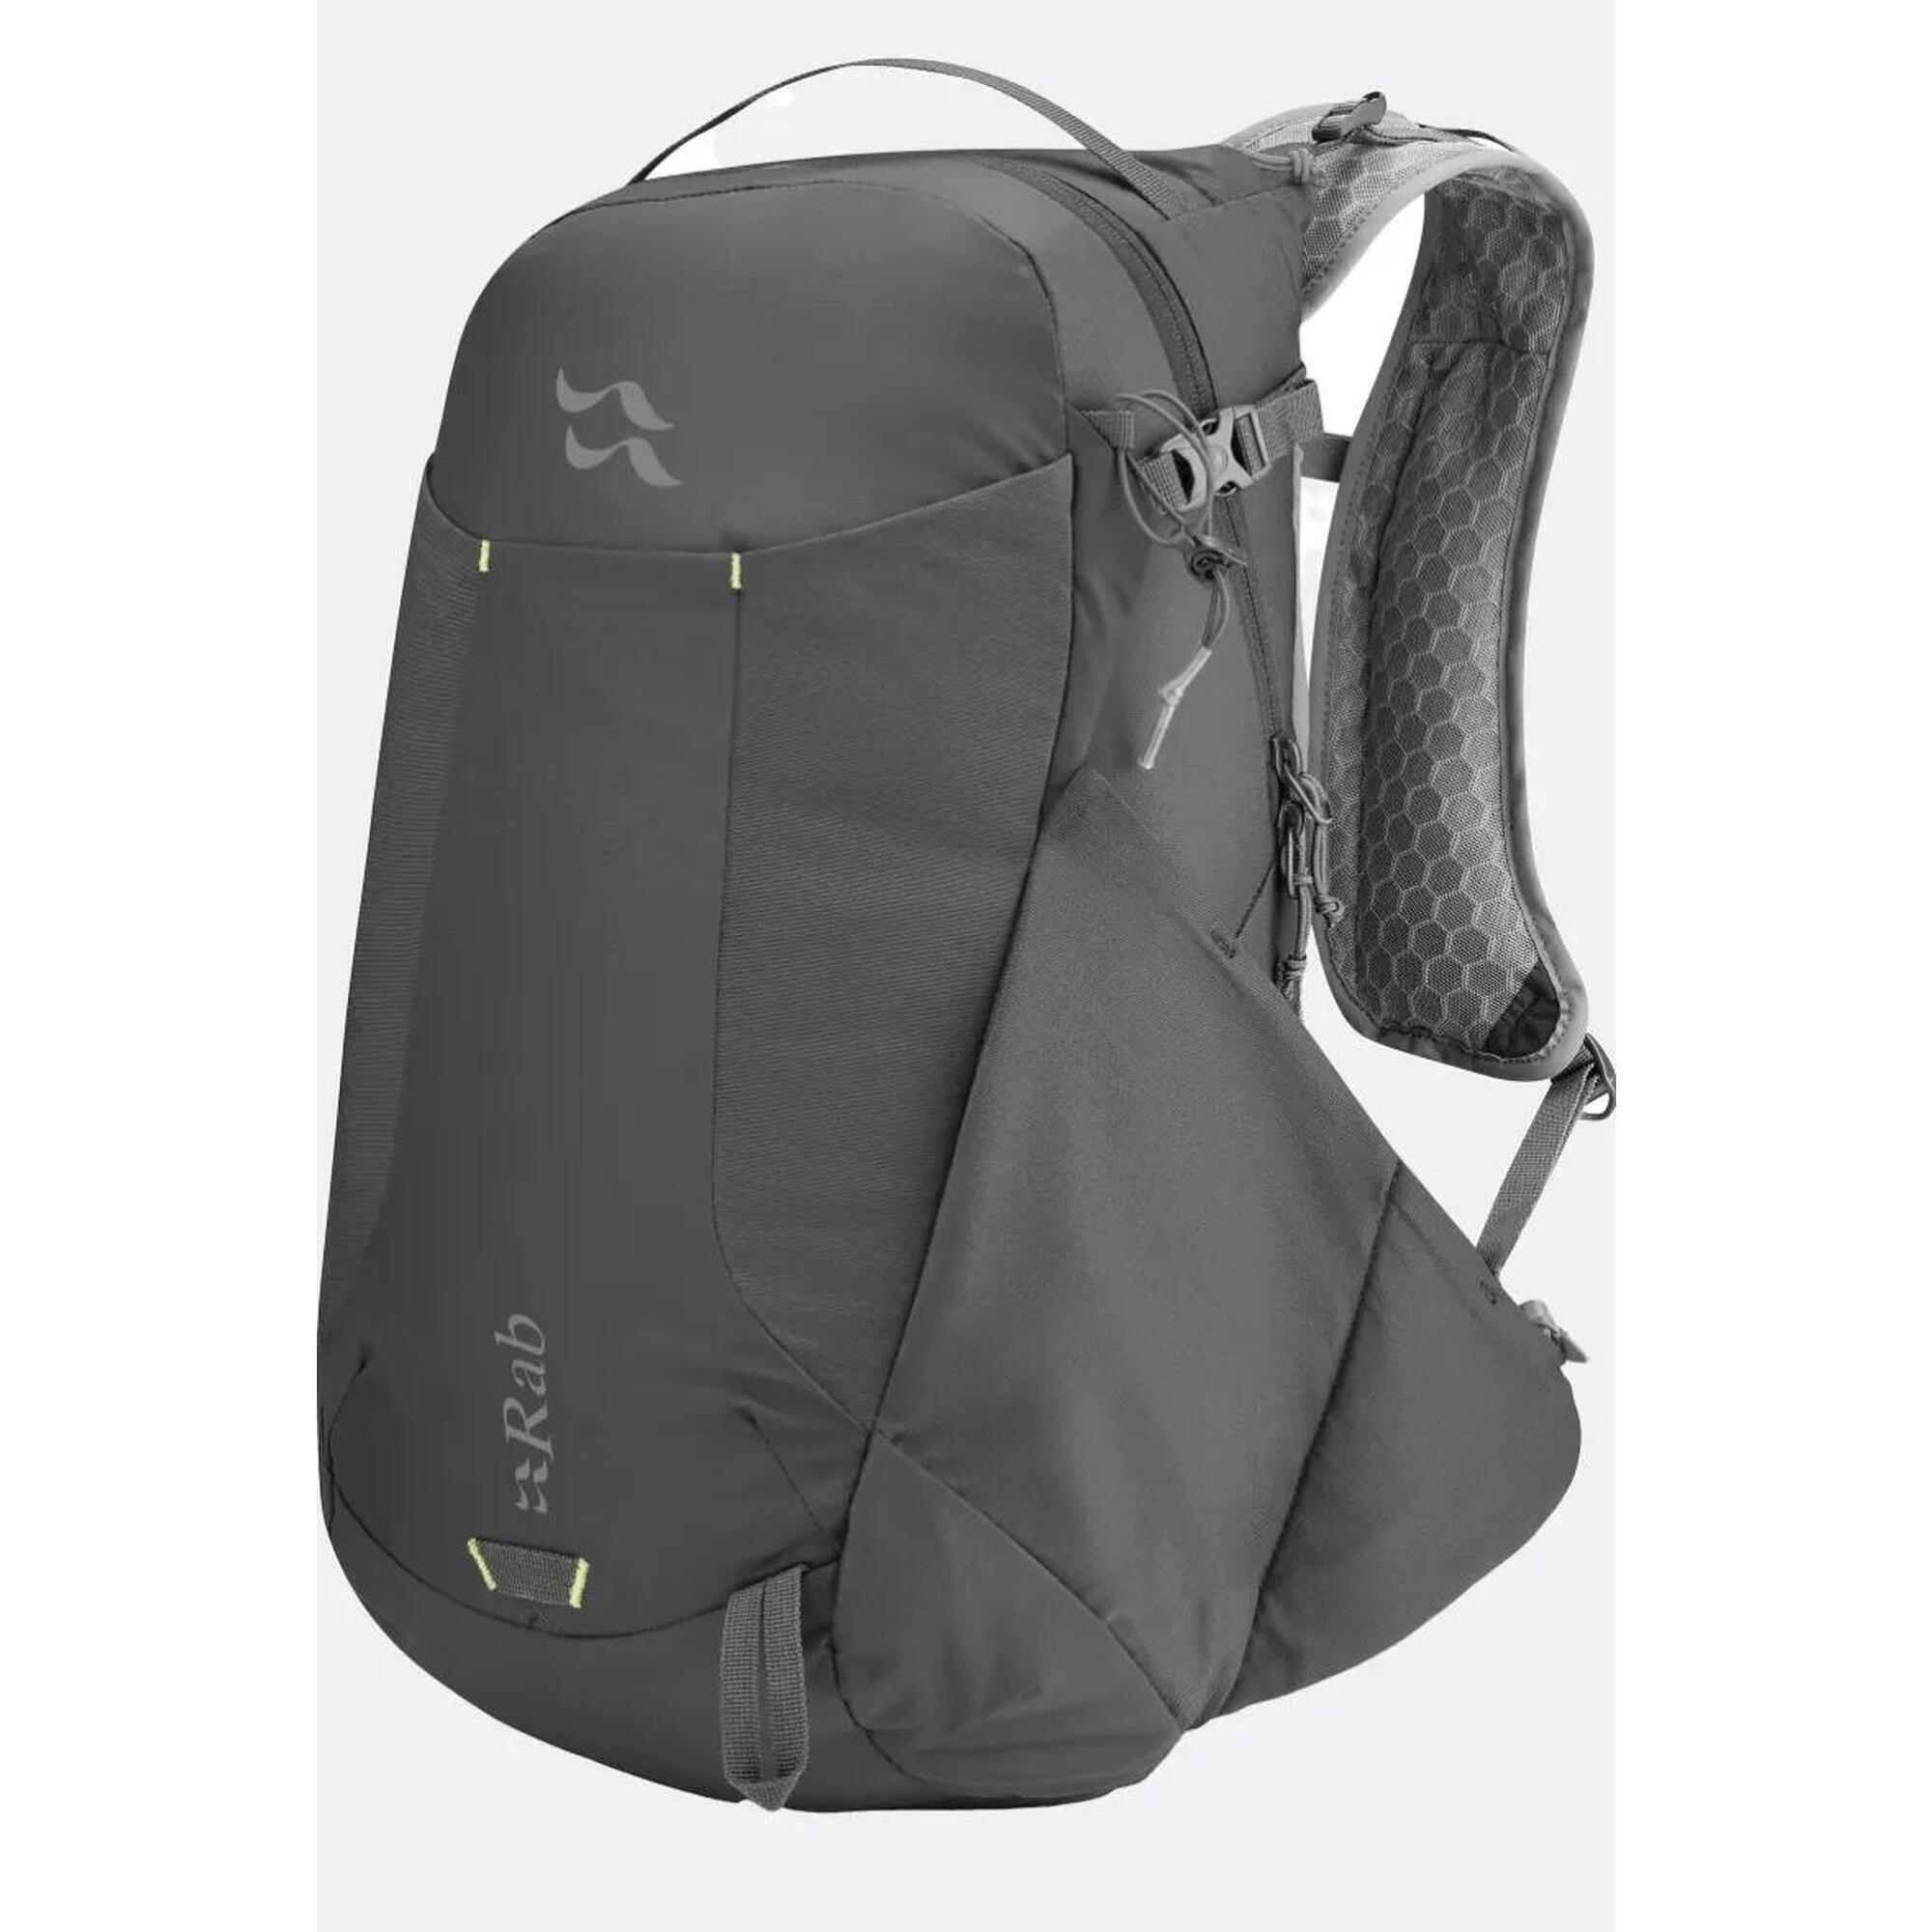 Aeon LT Hiking Backpack 25L - Grey